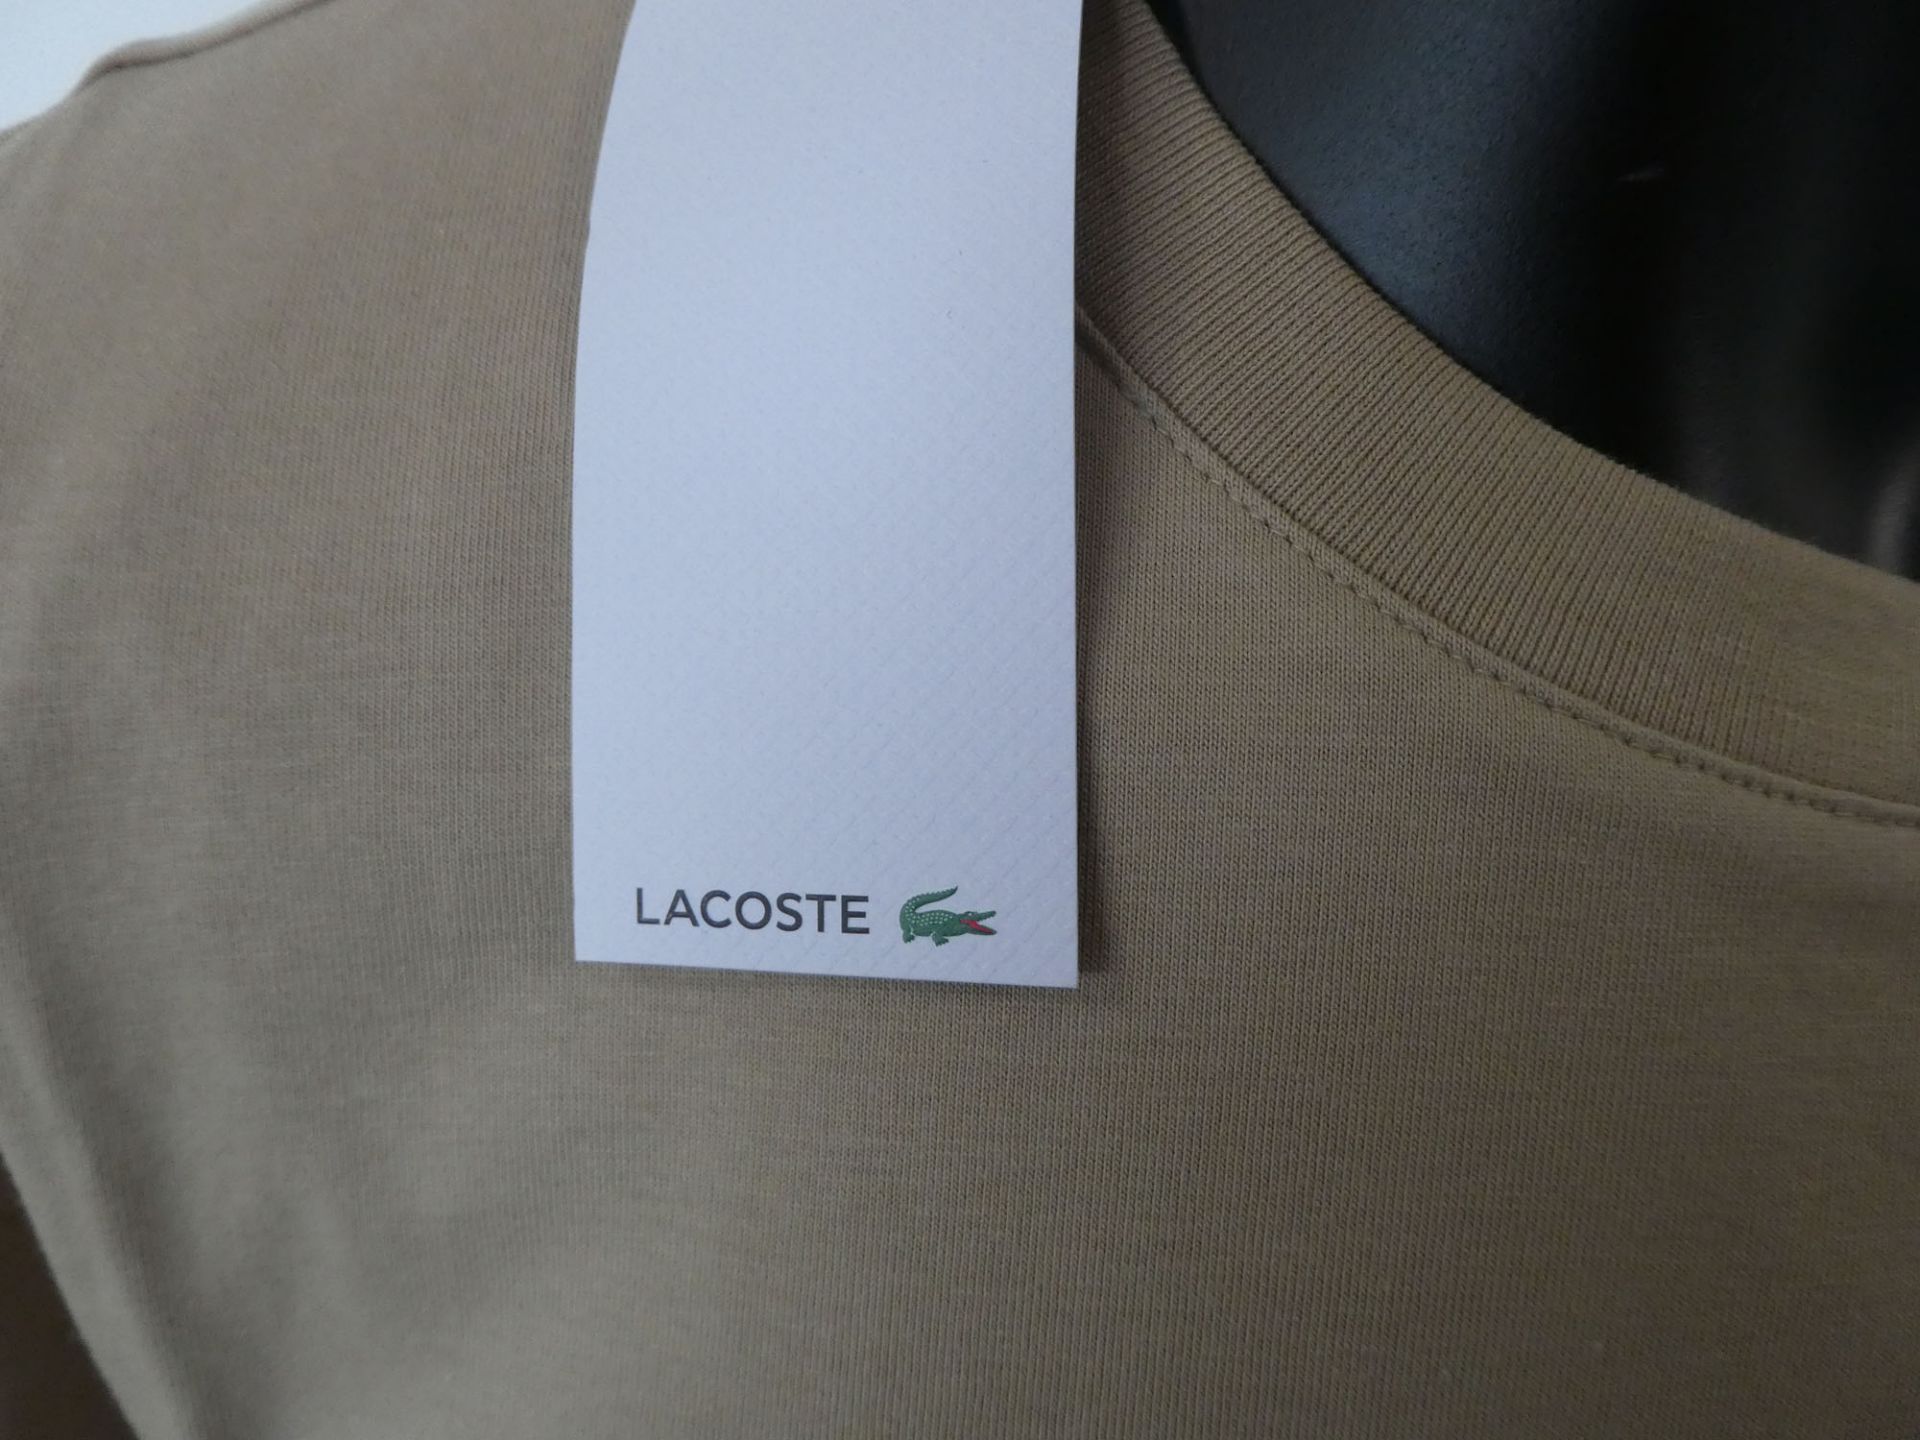 Lacoste men's tri colour t shirt size 7 - Image 2 of 4